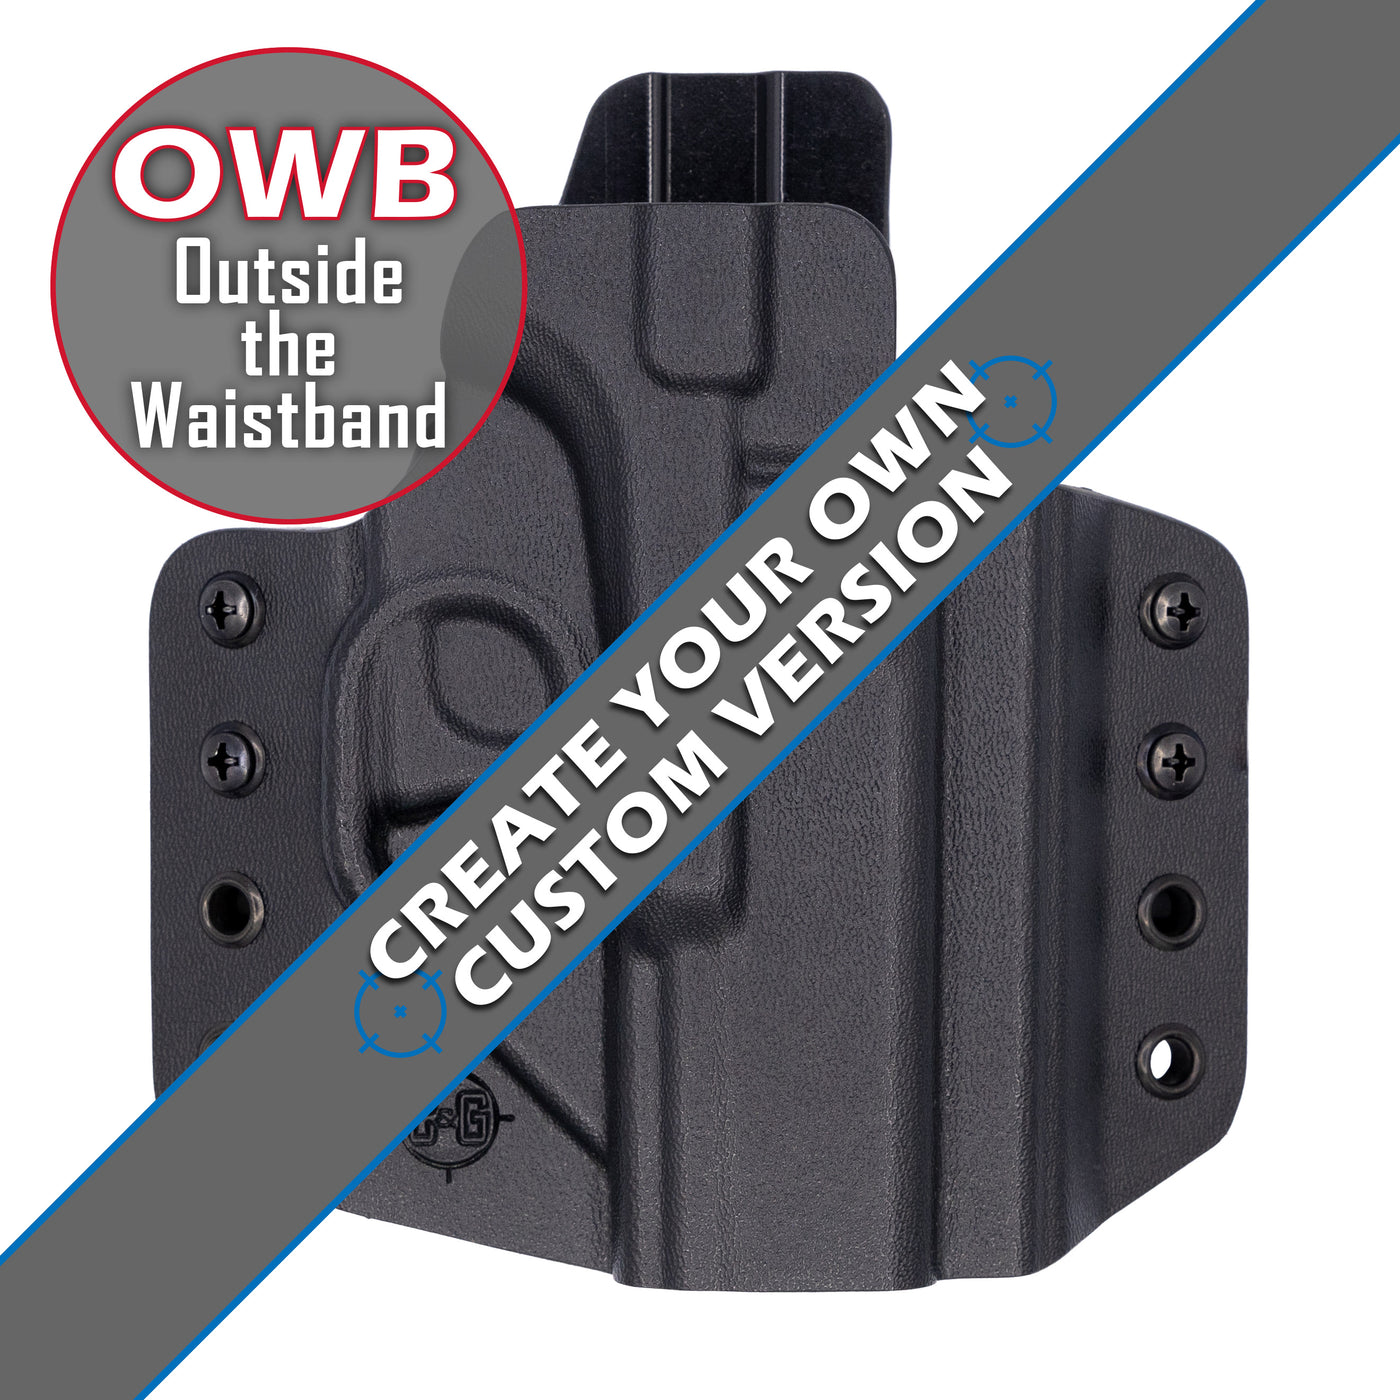 C&G Holsters custom OWB covert holster